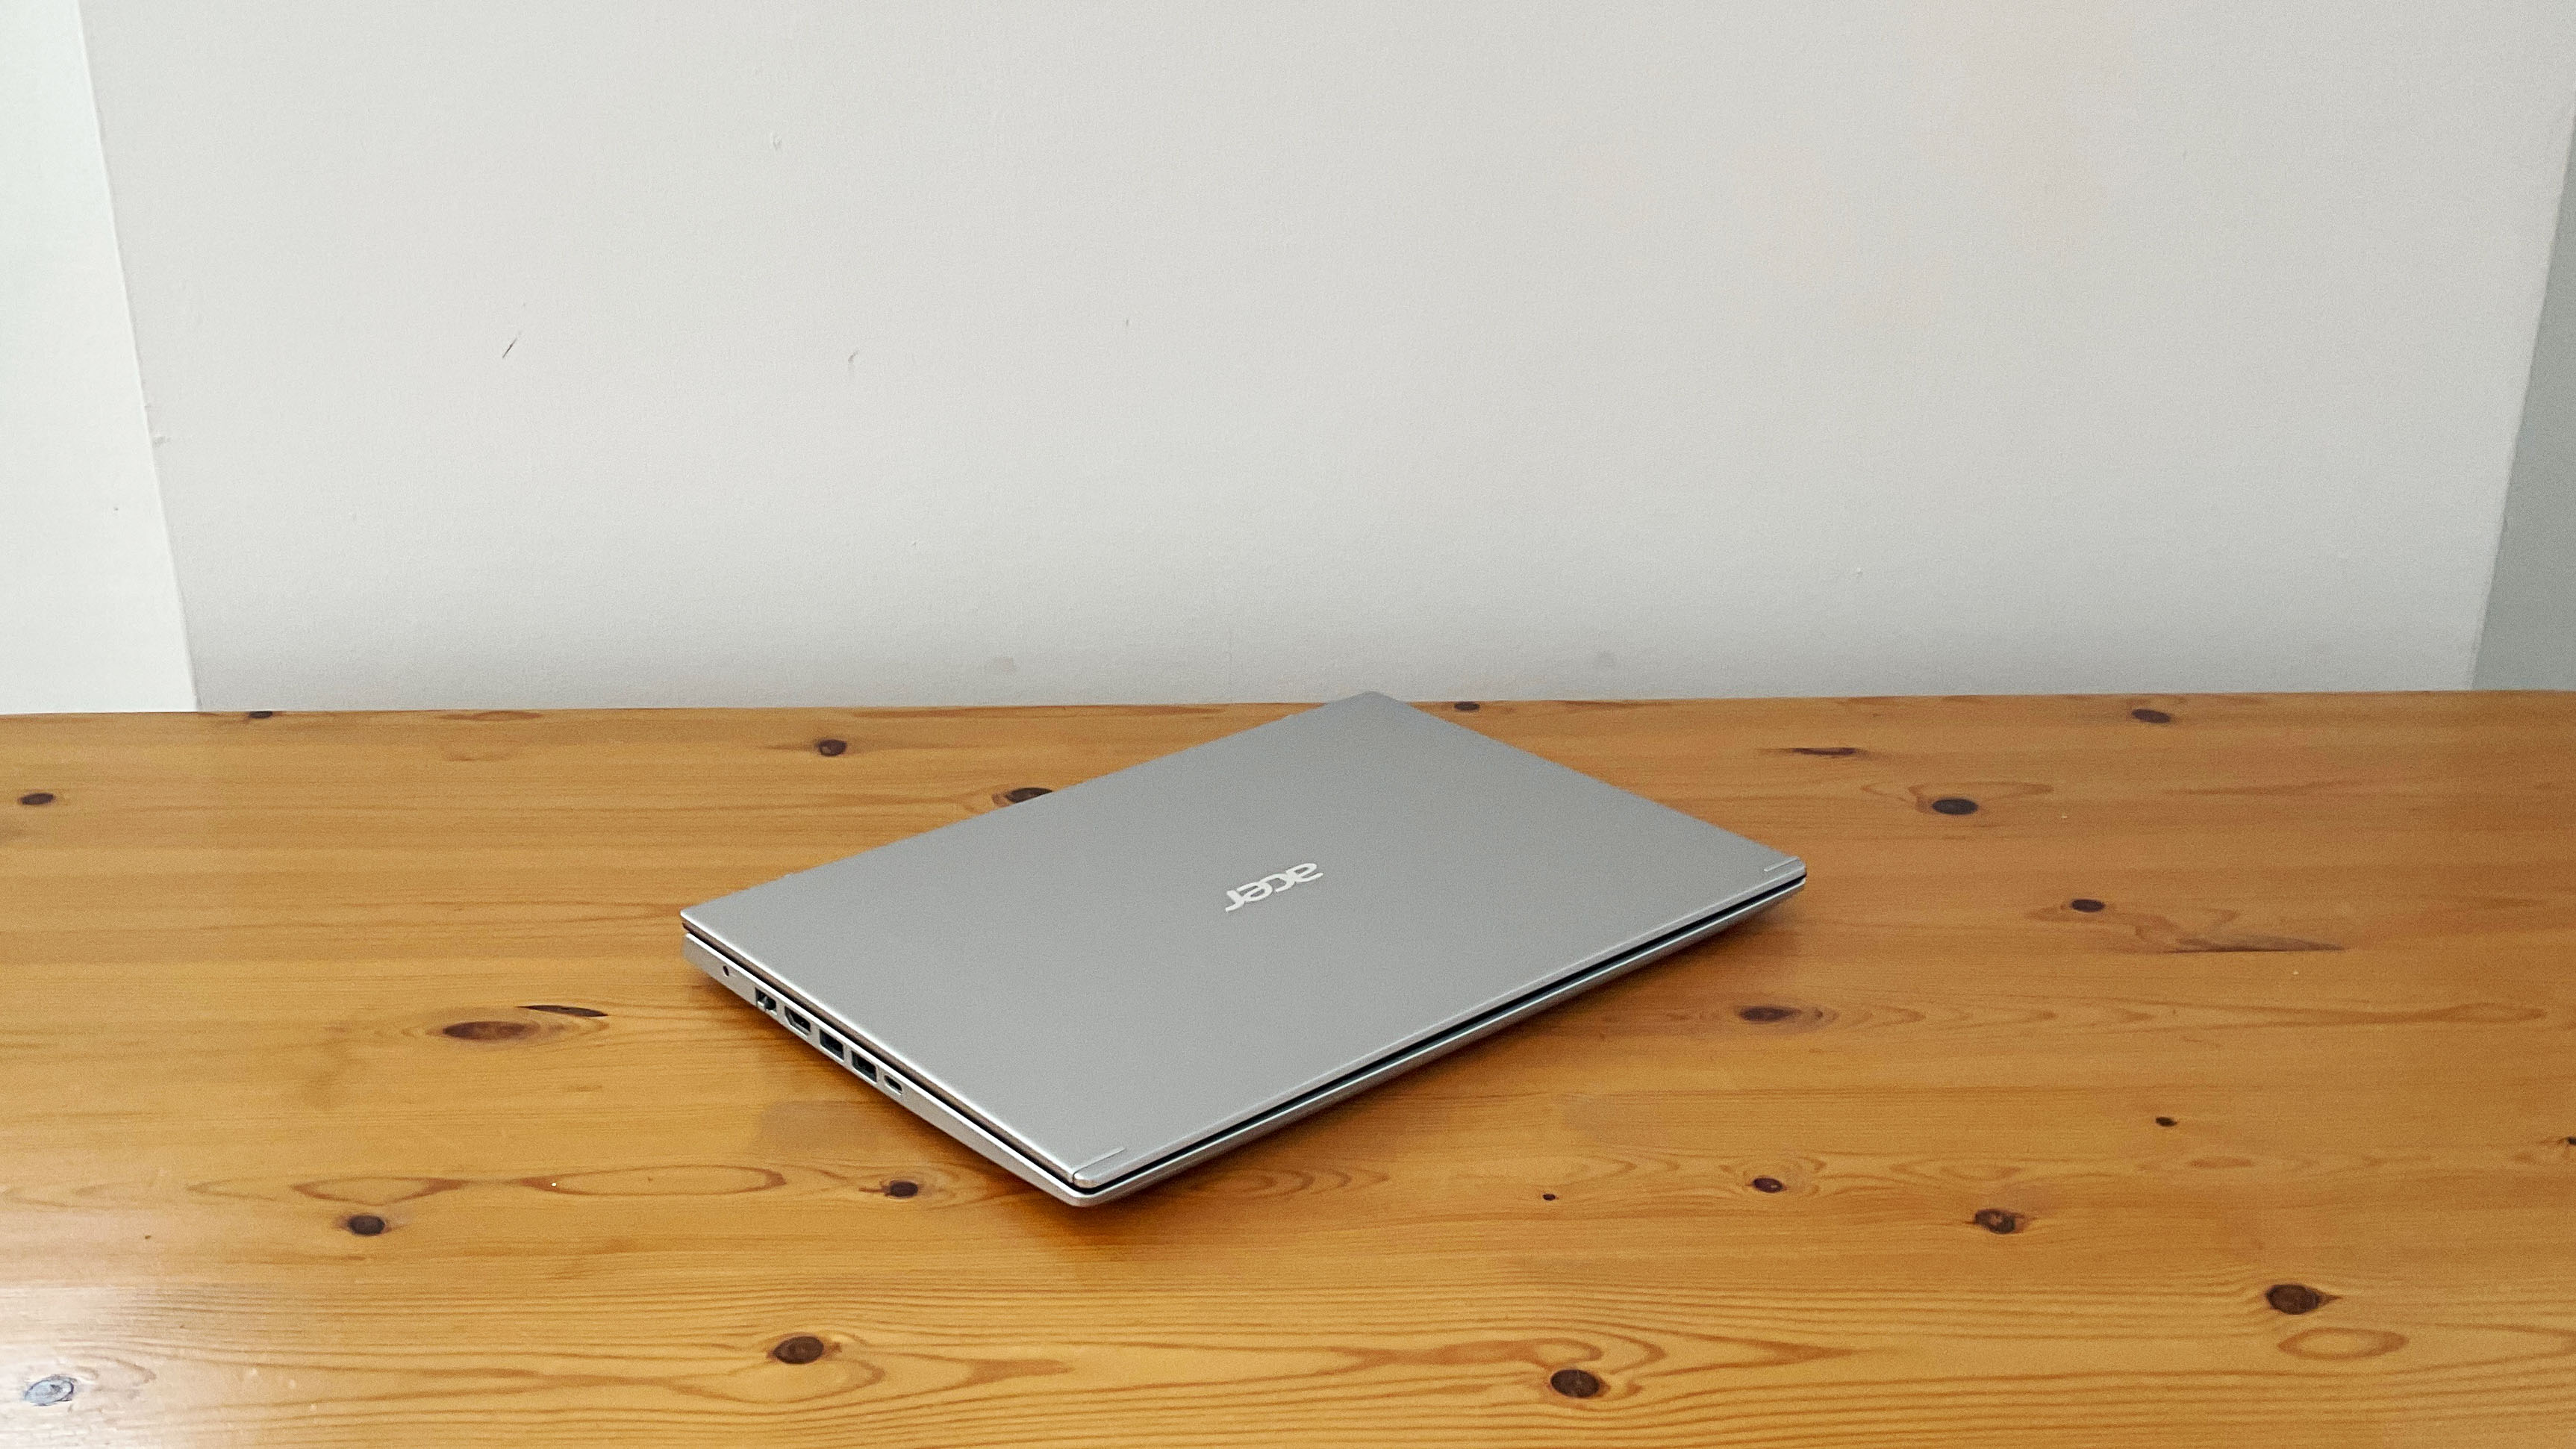 Acer Aspire 5 laptop on desk, lid closed.